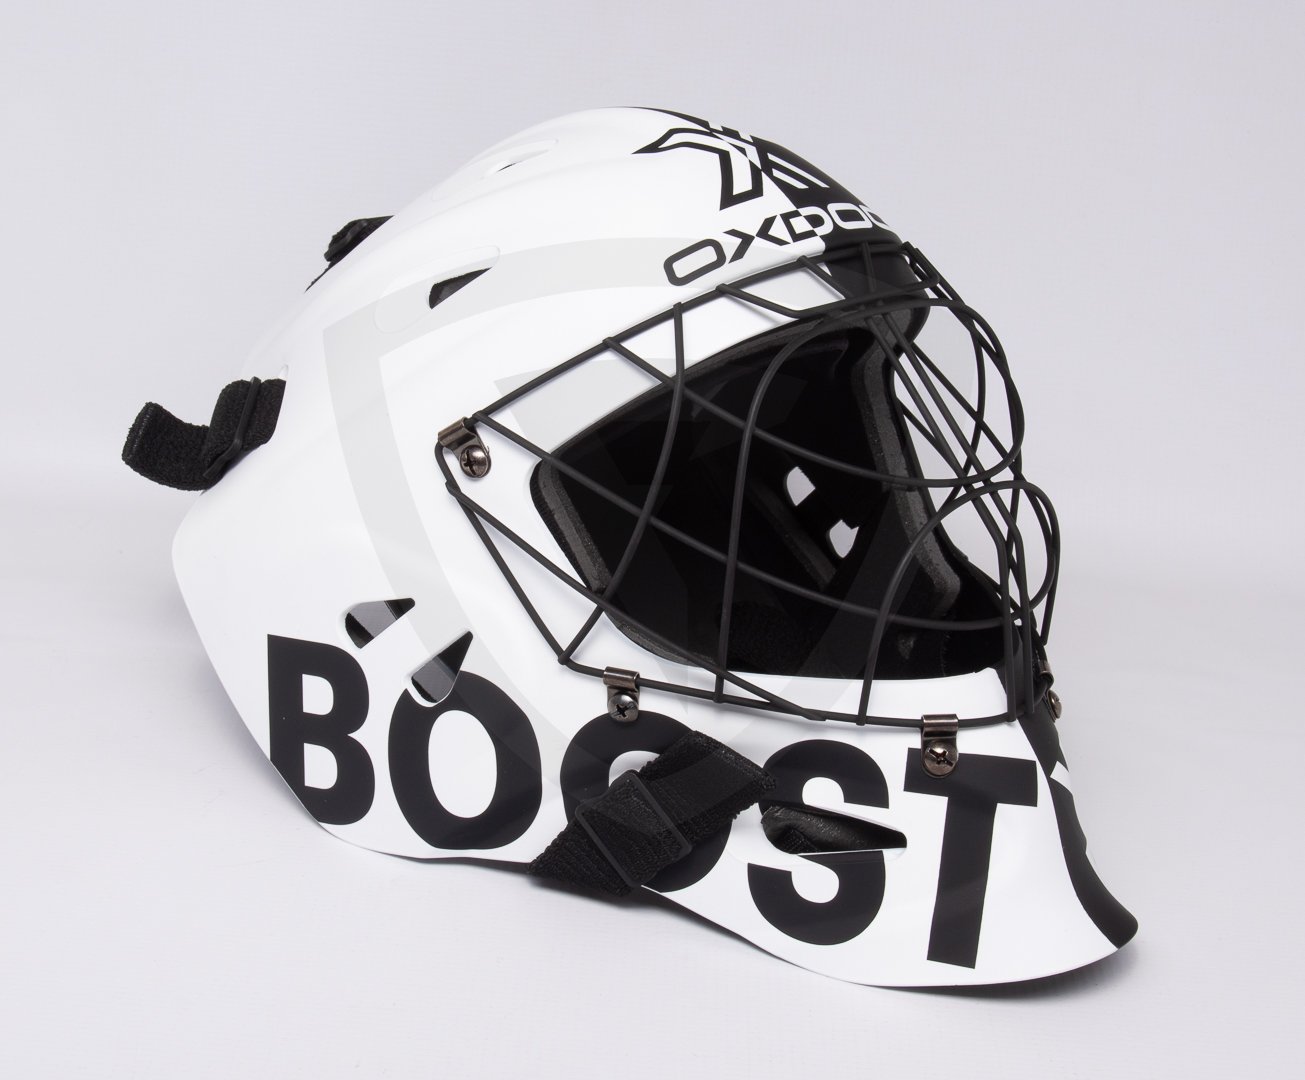 Oxdog Xguard Helmet SR Black&White černá-bílá